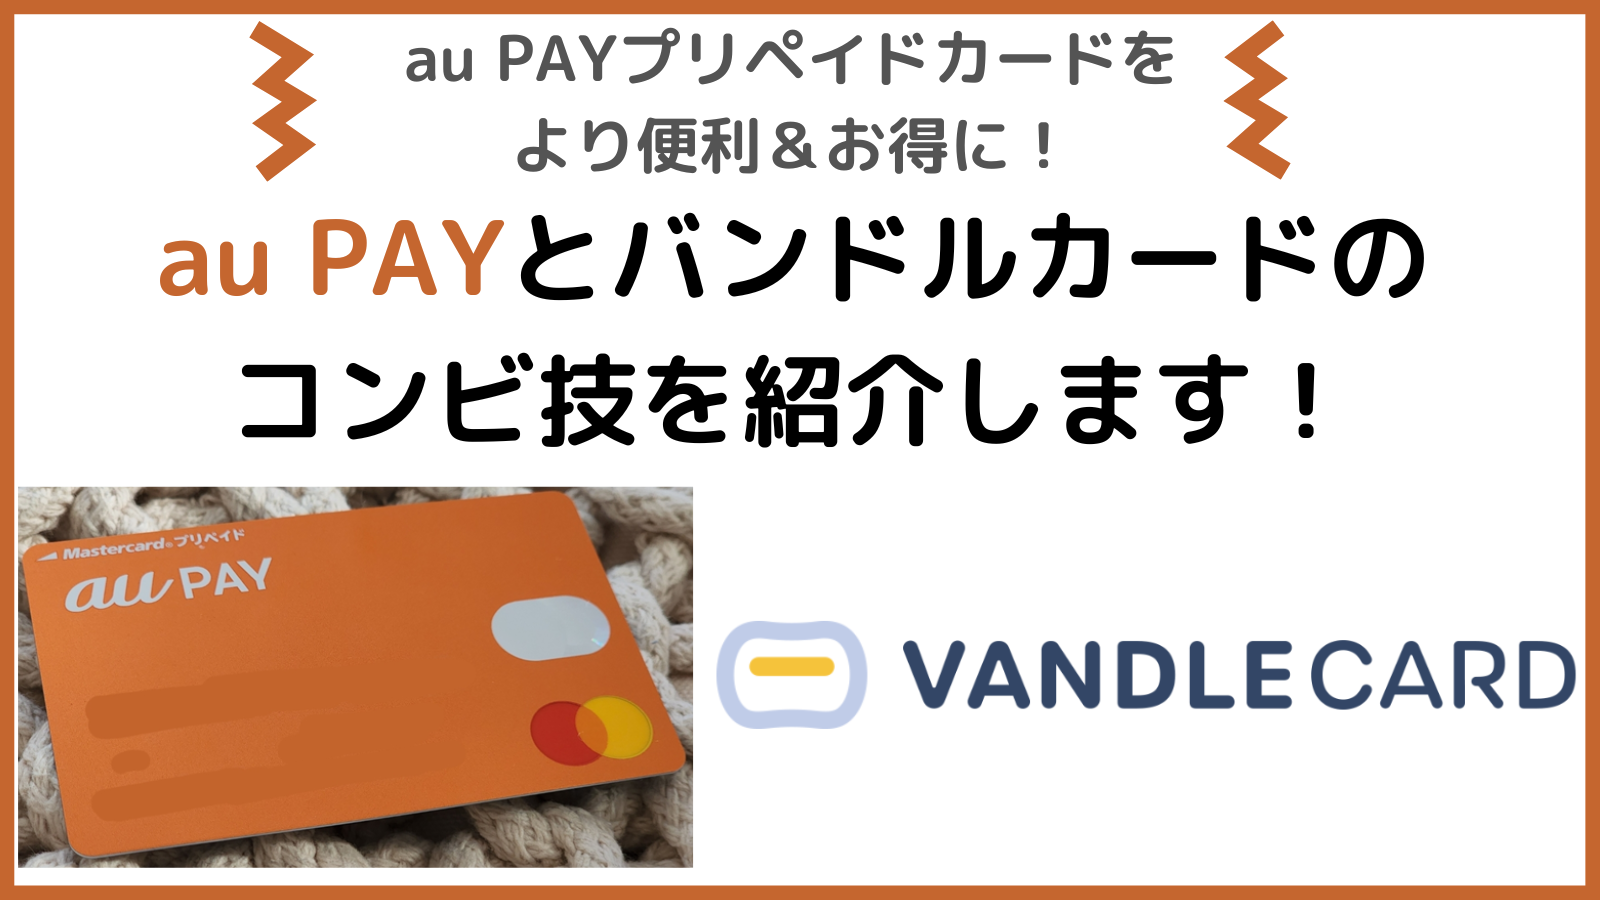 バンドル カード au pay